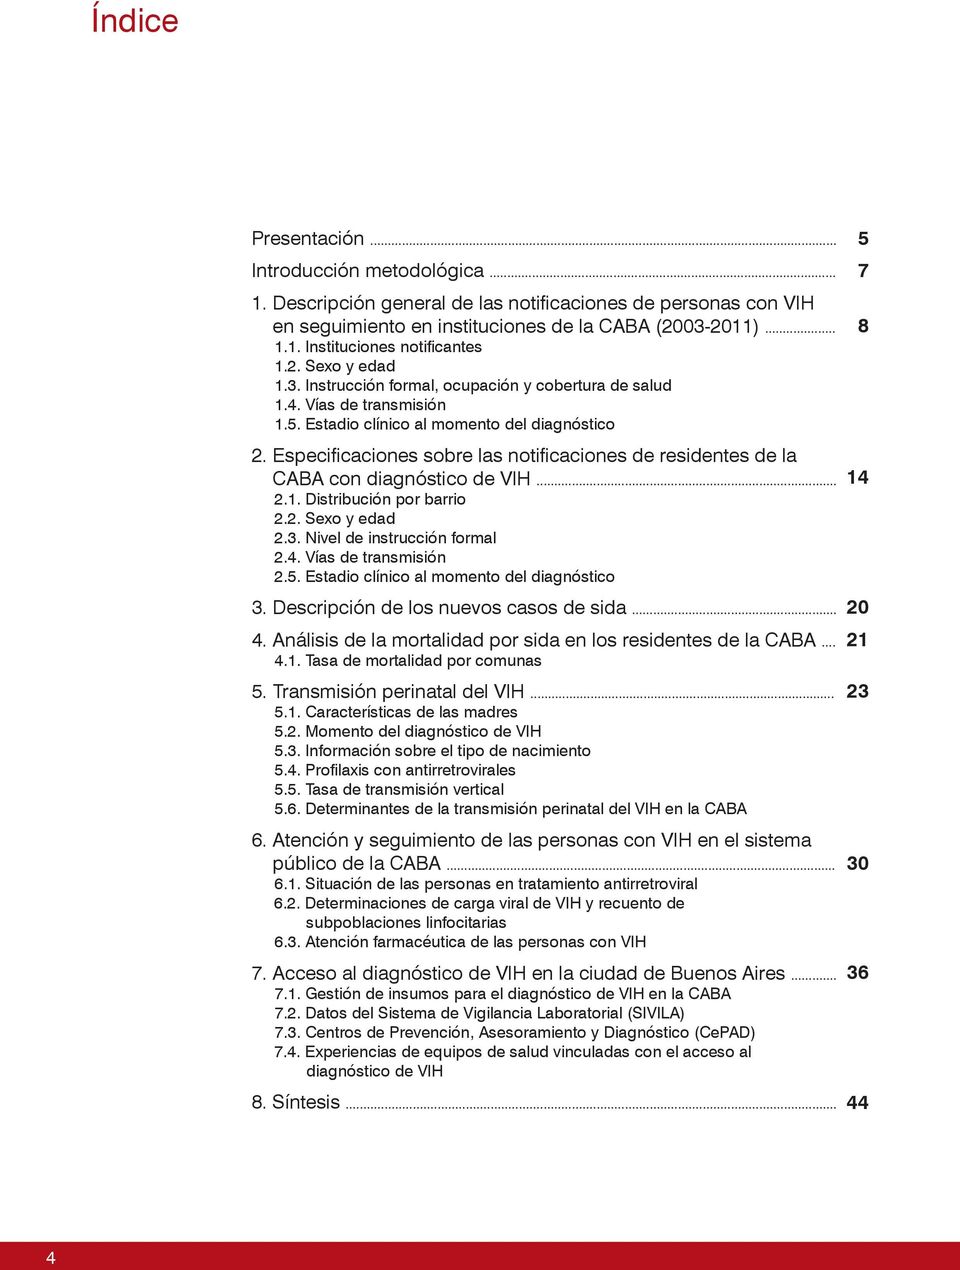 Especificaciones sobre las notificaciones de residentes de la CABA con diagnóstico de VIH... 2.1. Distribución por barrio 2.2. Sexo y edad 2.3. Nivel de instrucción formal 2.4. Vías de transmisión 2.